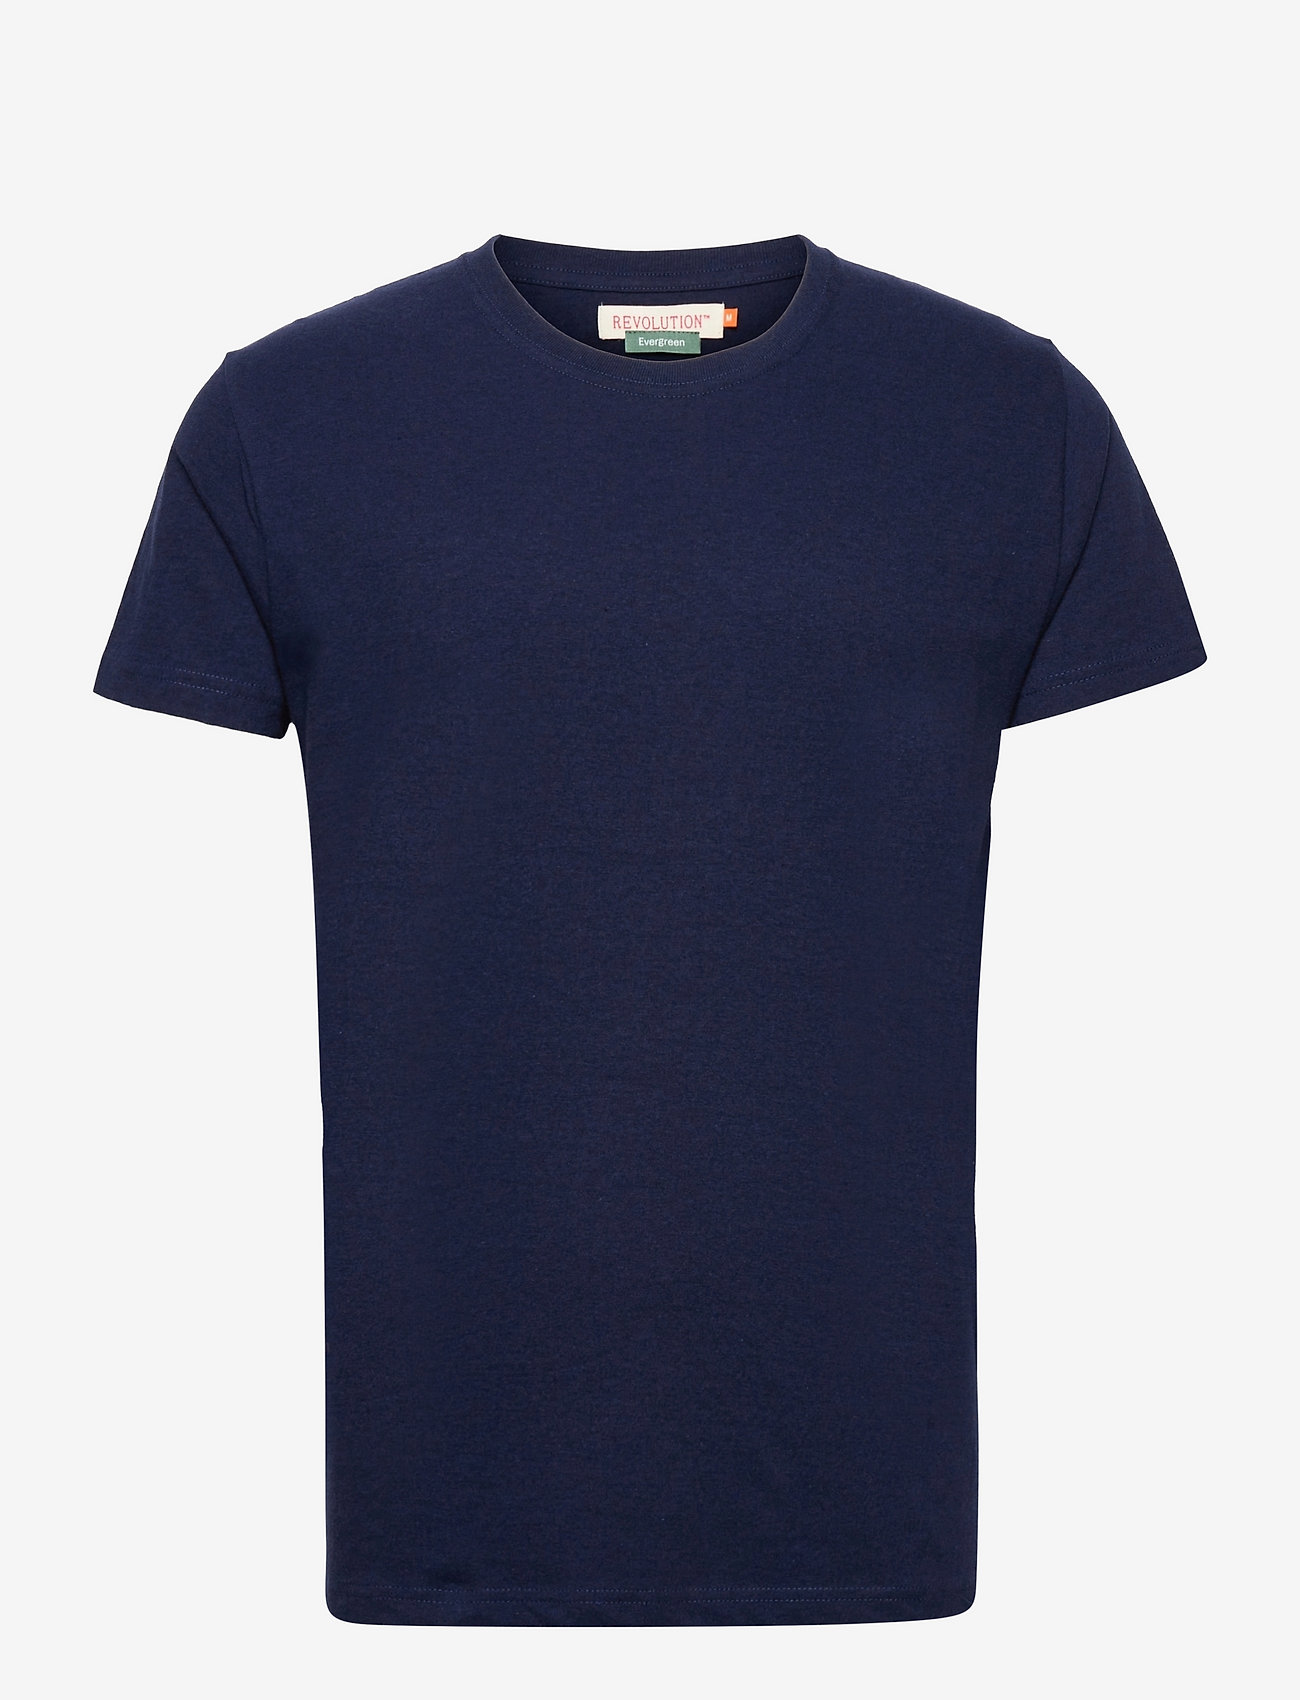 Revolution - Regular fit round neck t-shirt - laagste prijzen - navy-mel - 0